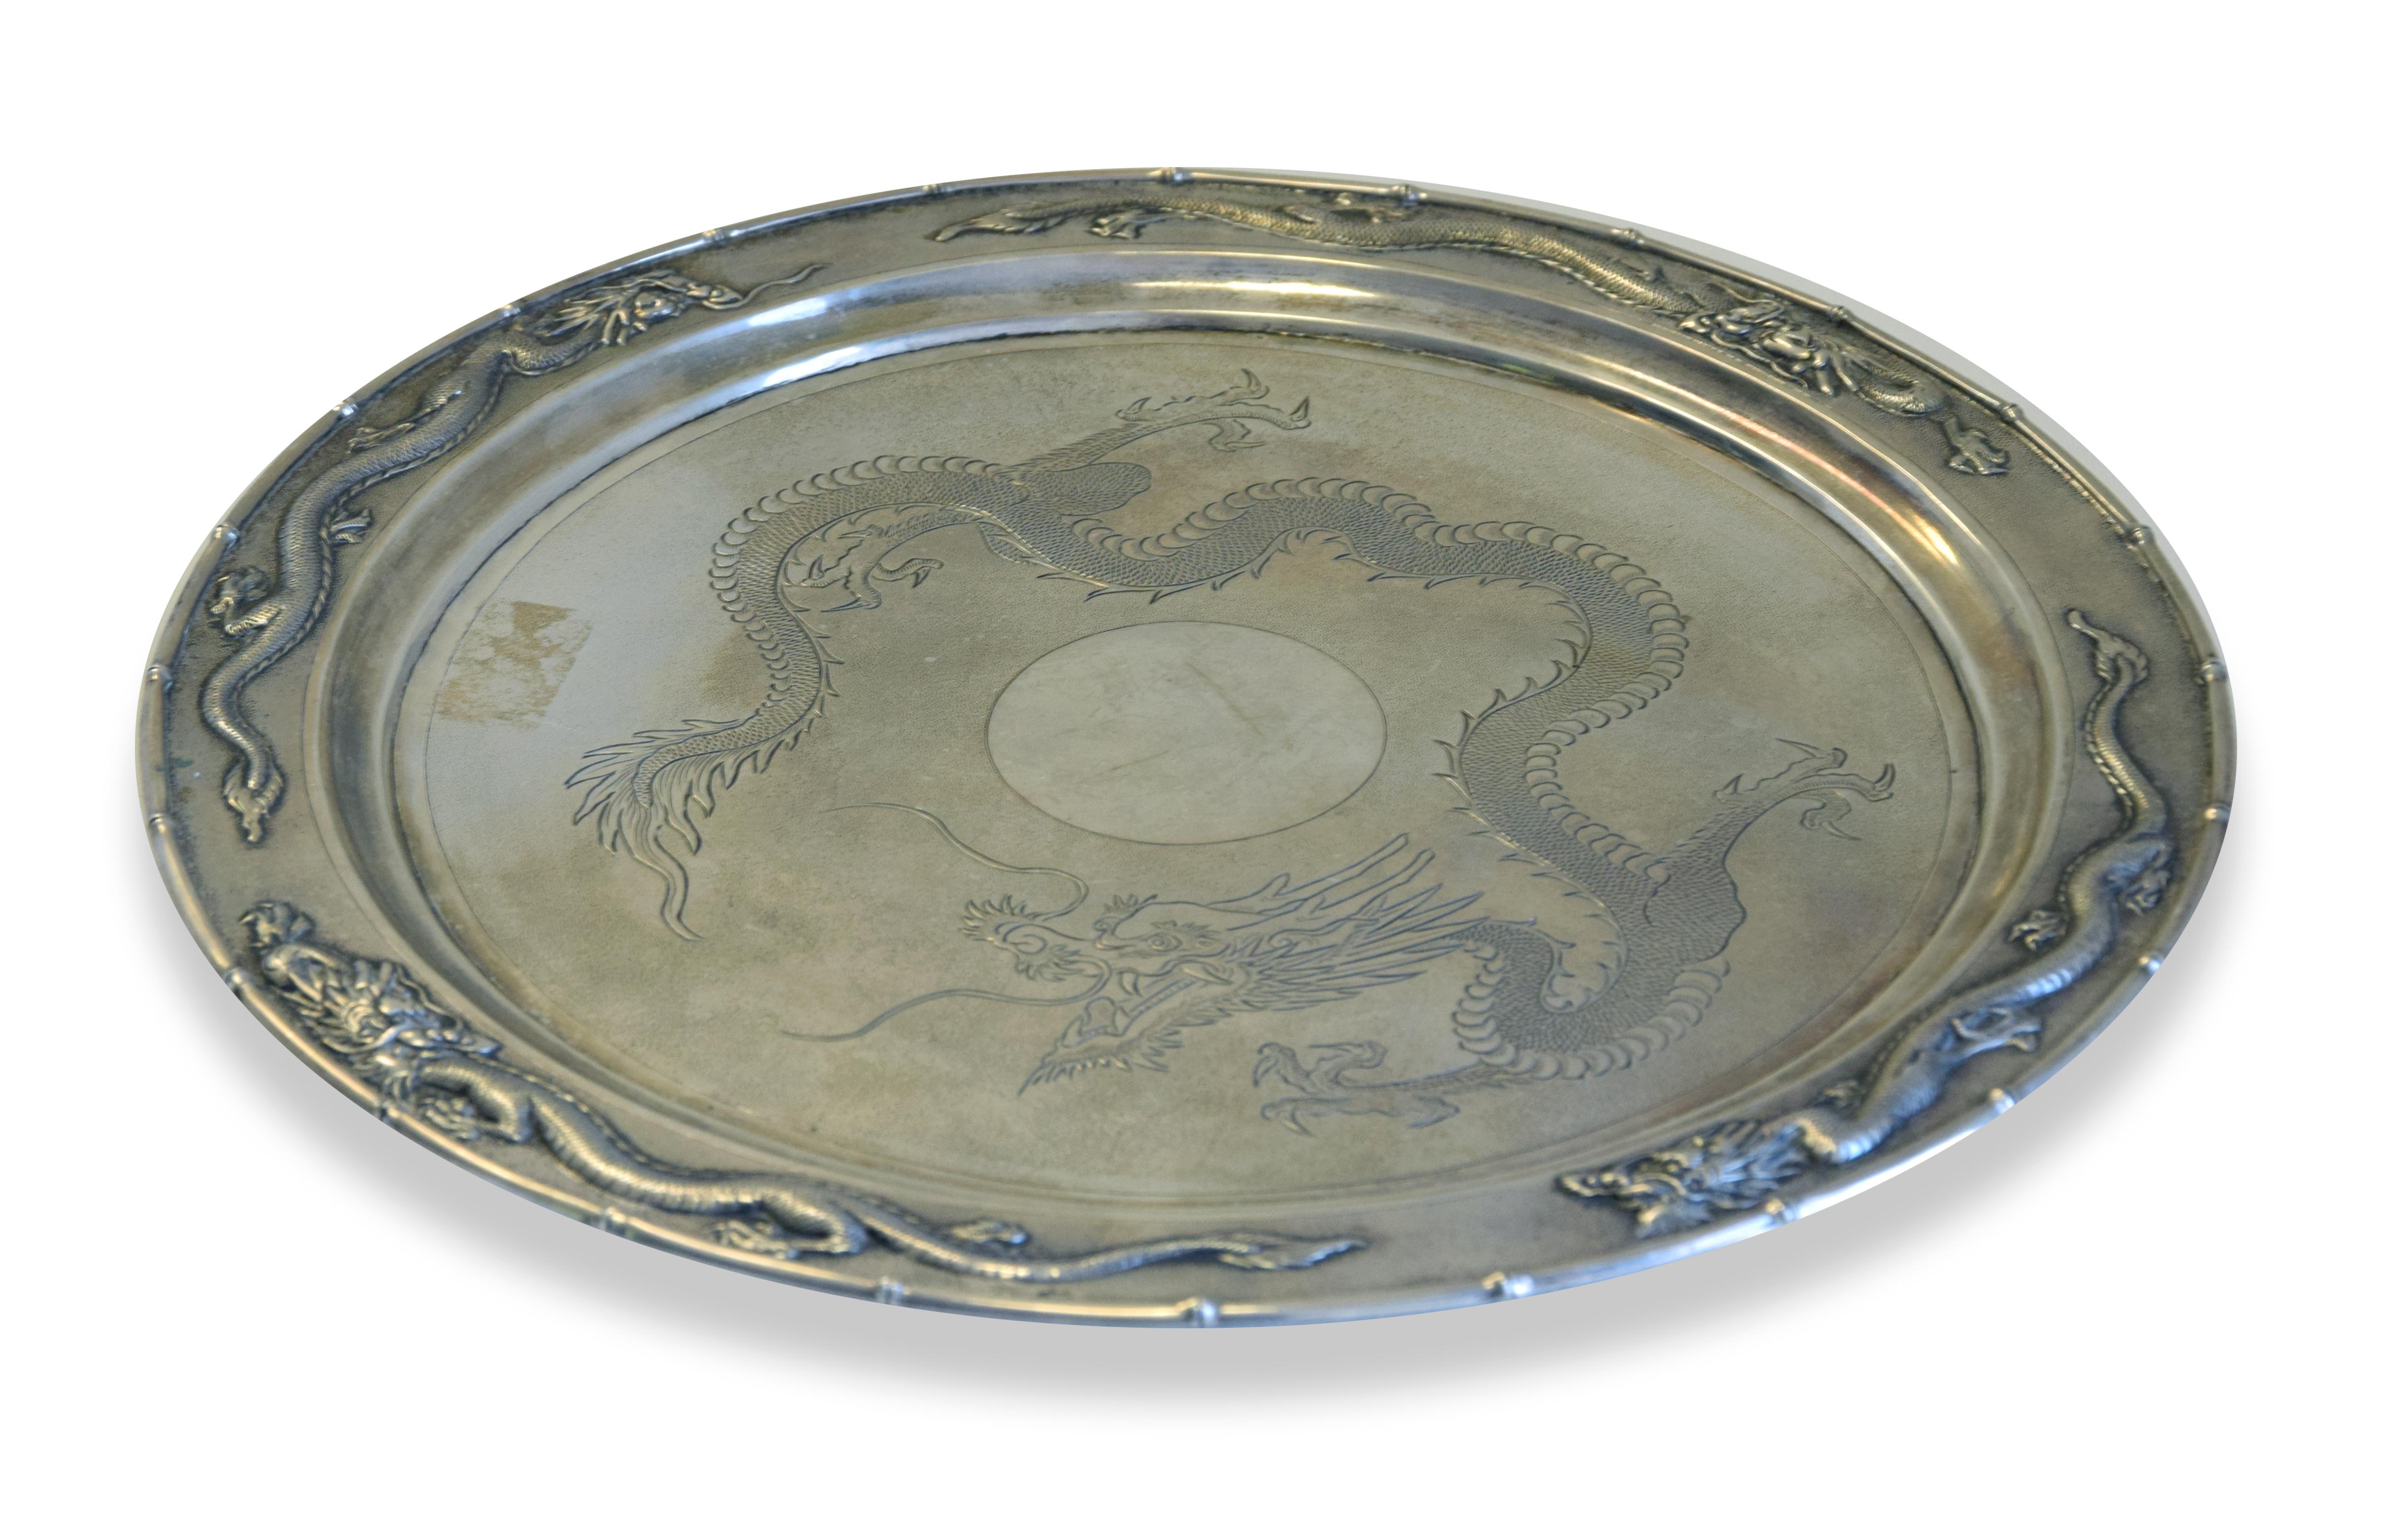 Das chinesische Silbertablett ist ein originelles Dekorationsobjekt, das zwischen 1870 und 1930 in China hergestellt wurde.

Original Silberobjekt.

Punze Shangai, Silberschmied QI CHANG 其昌

Mit dem Titel 800/1000.

Ø 35 cm 

Neuwertiger